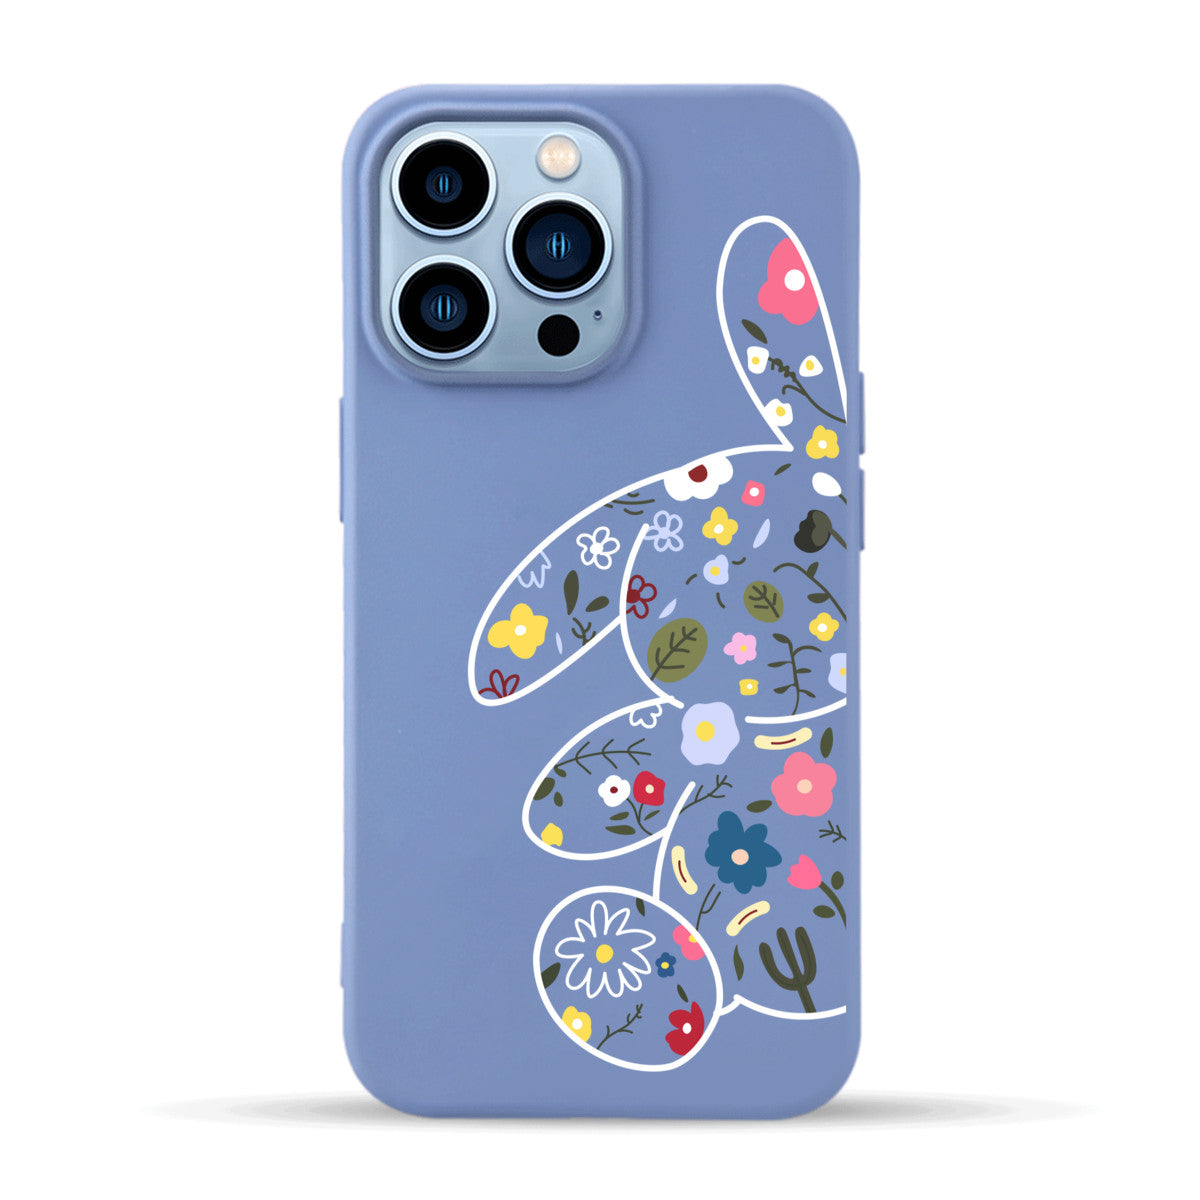 Floral Rabbit - iPhone Case